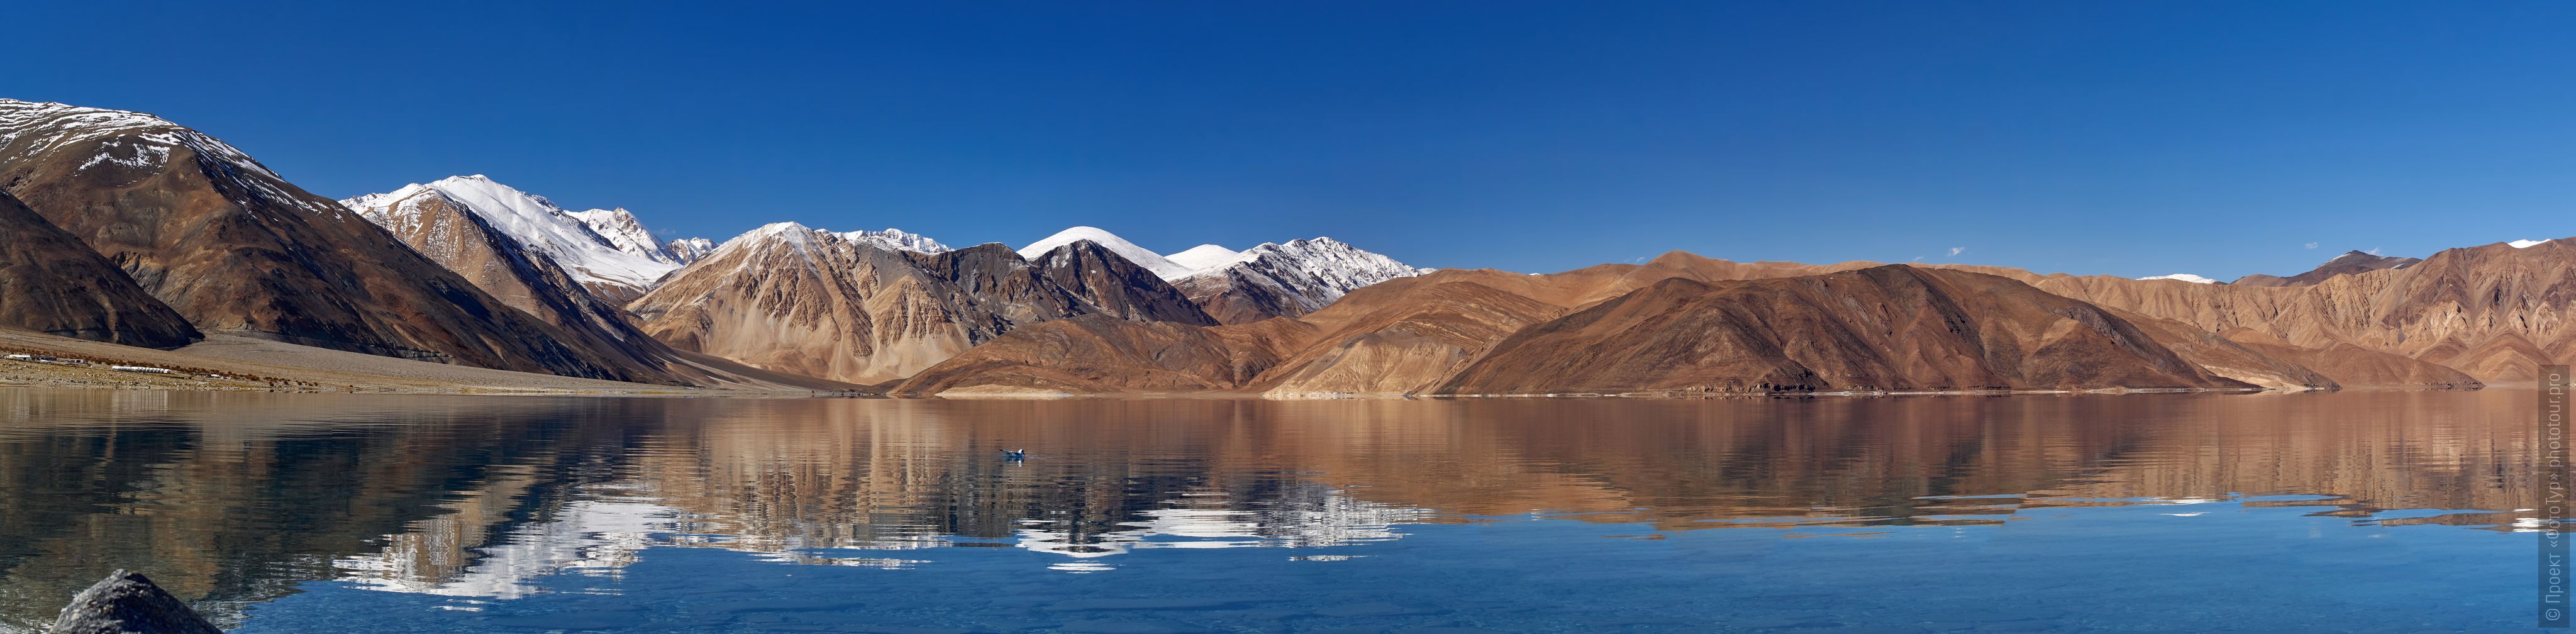 Pangong Tso Lake, Ladakh. Advertiser Tibet Lakes: Alpine lakes, geyser valley, Lamayuru, September 01 - 10.09. 2022 year.